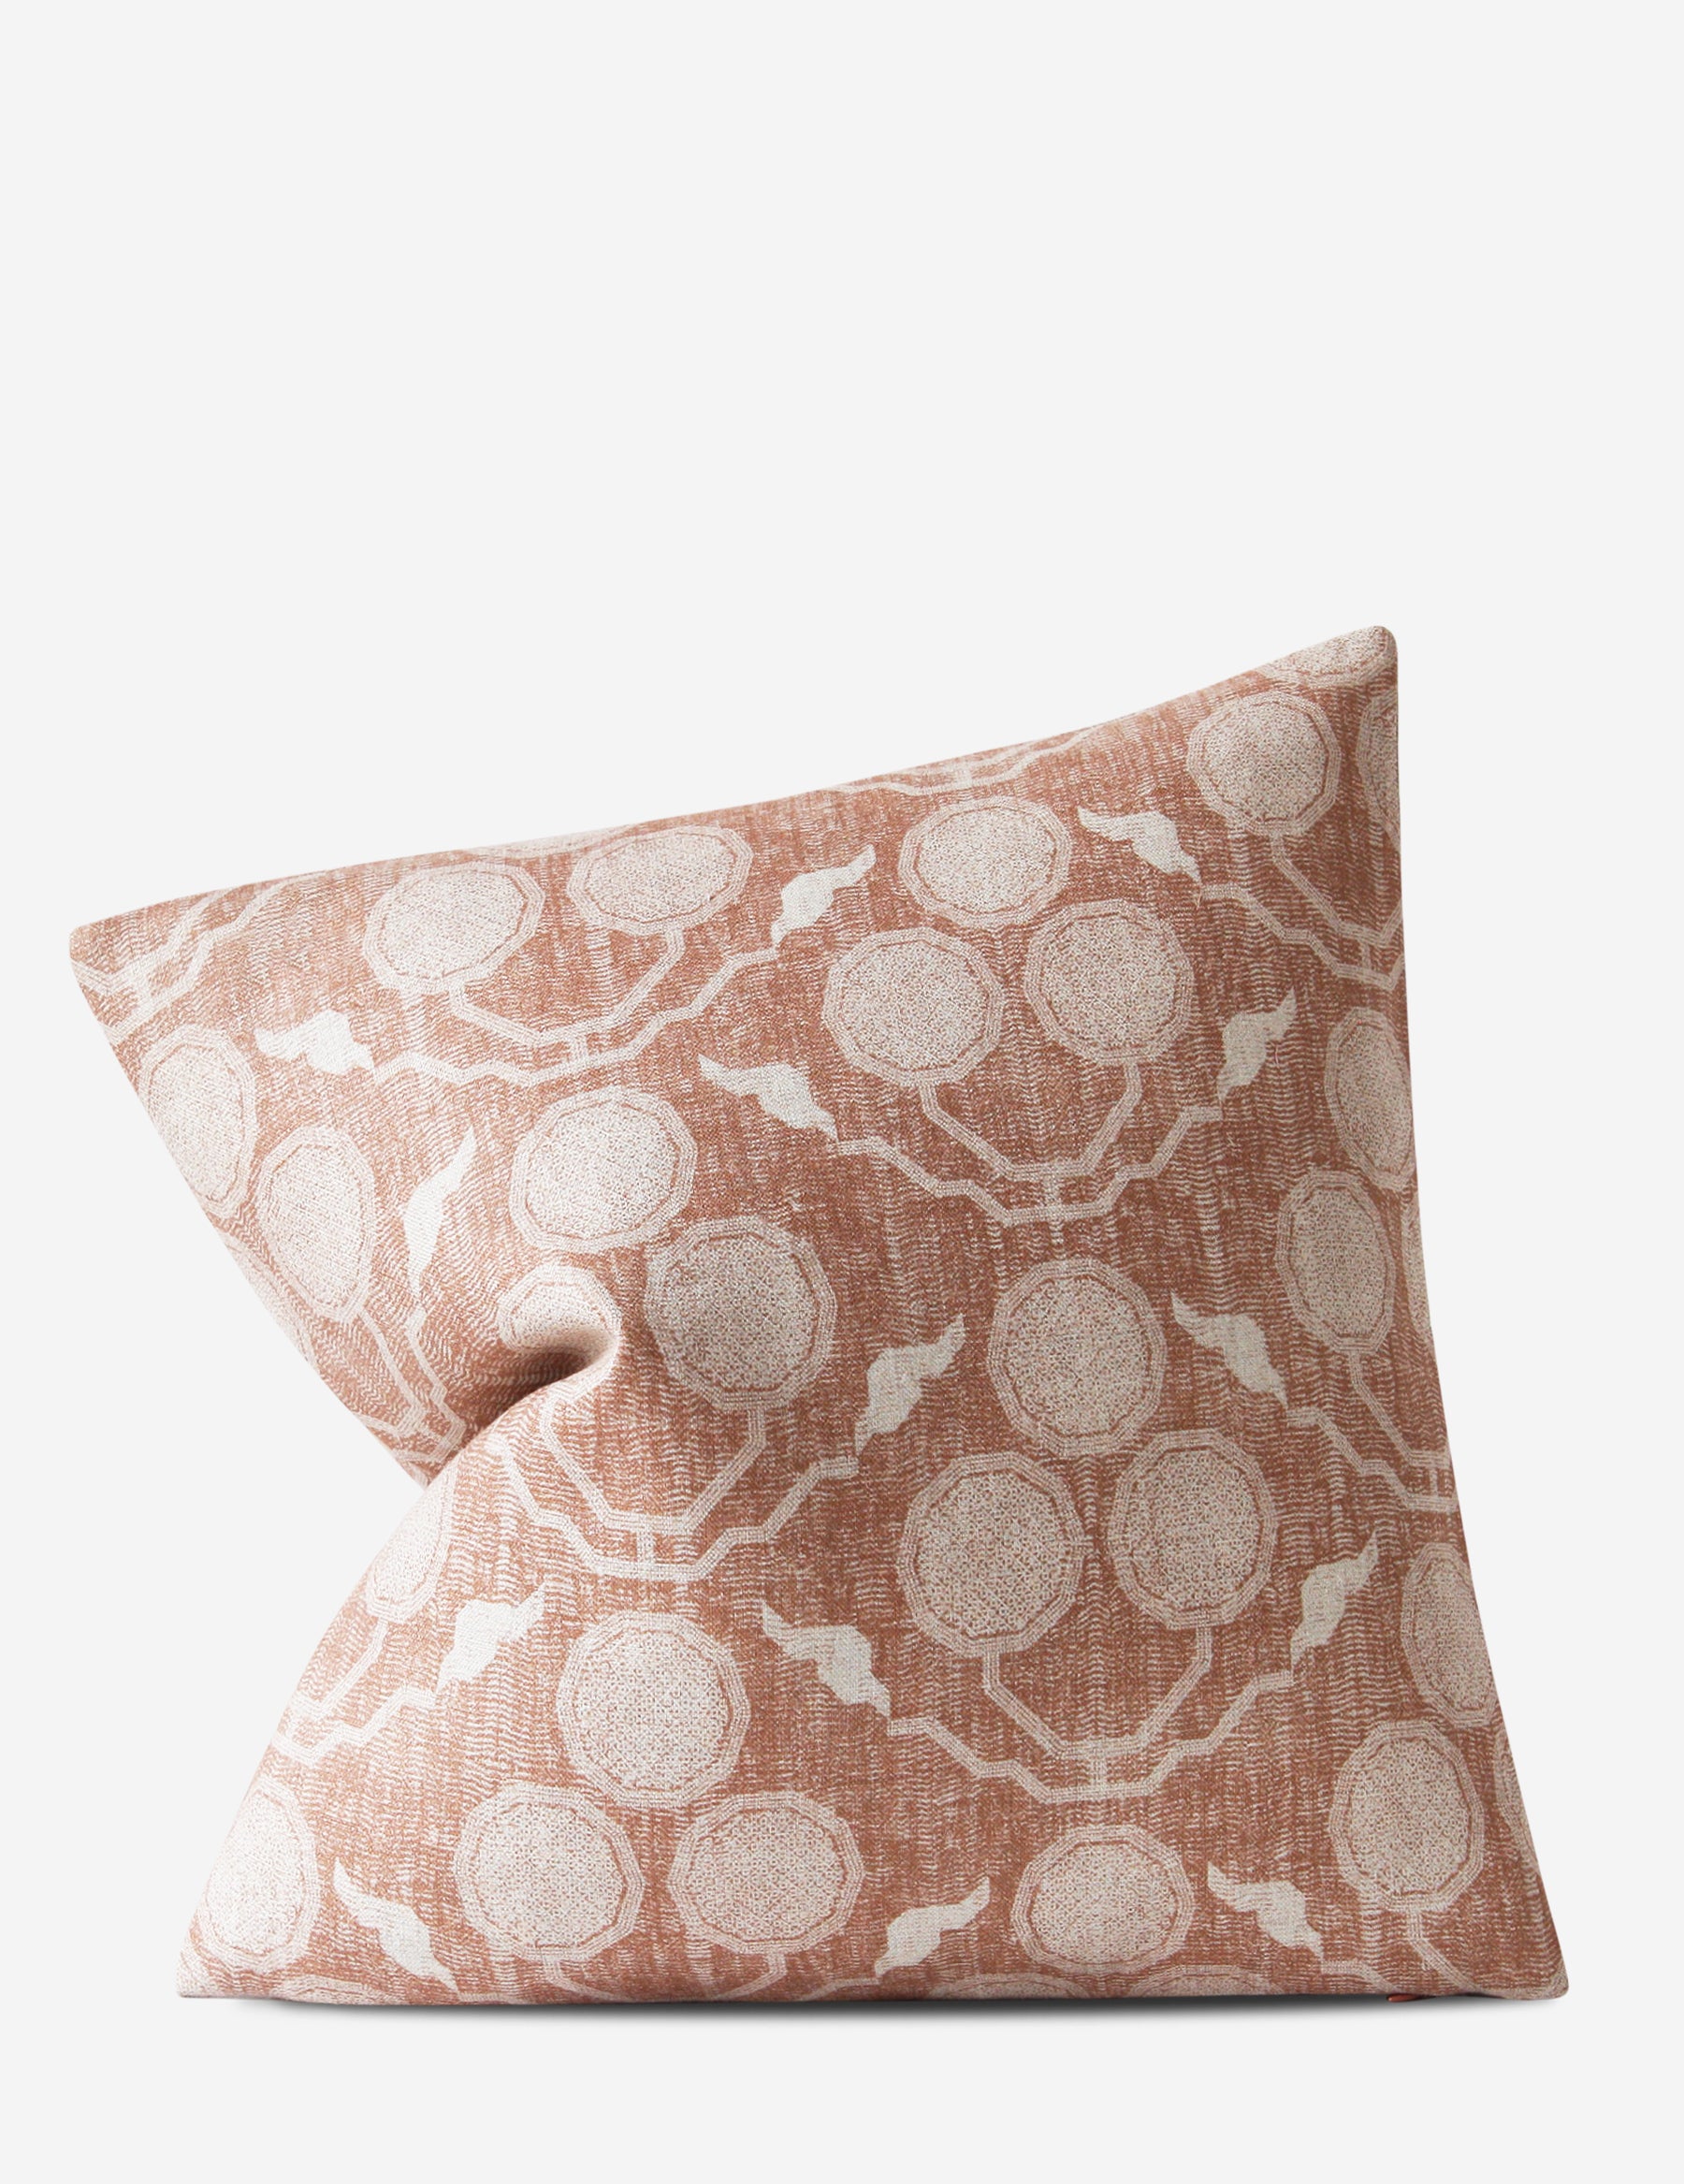 Pommia Pillow / Terracotta